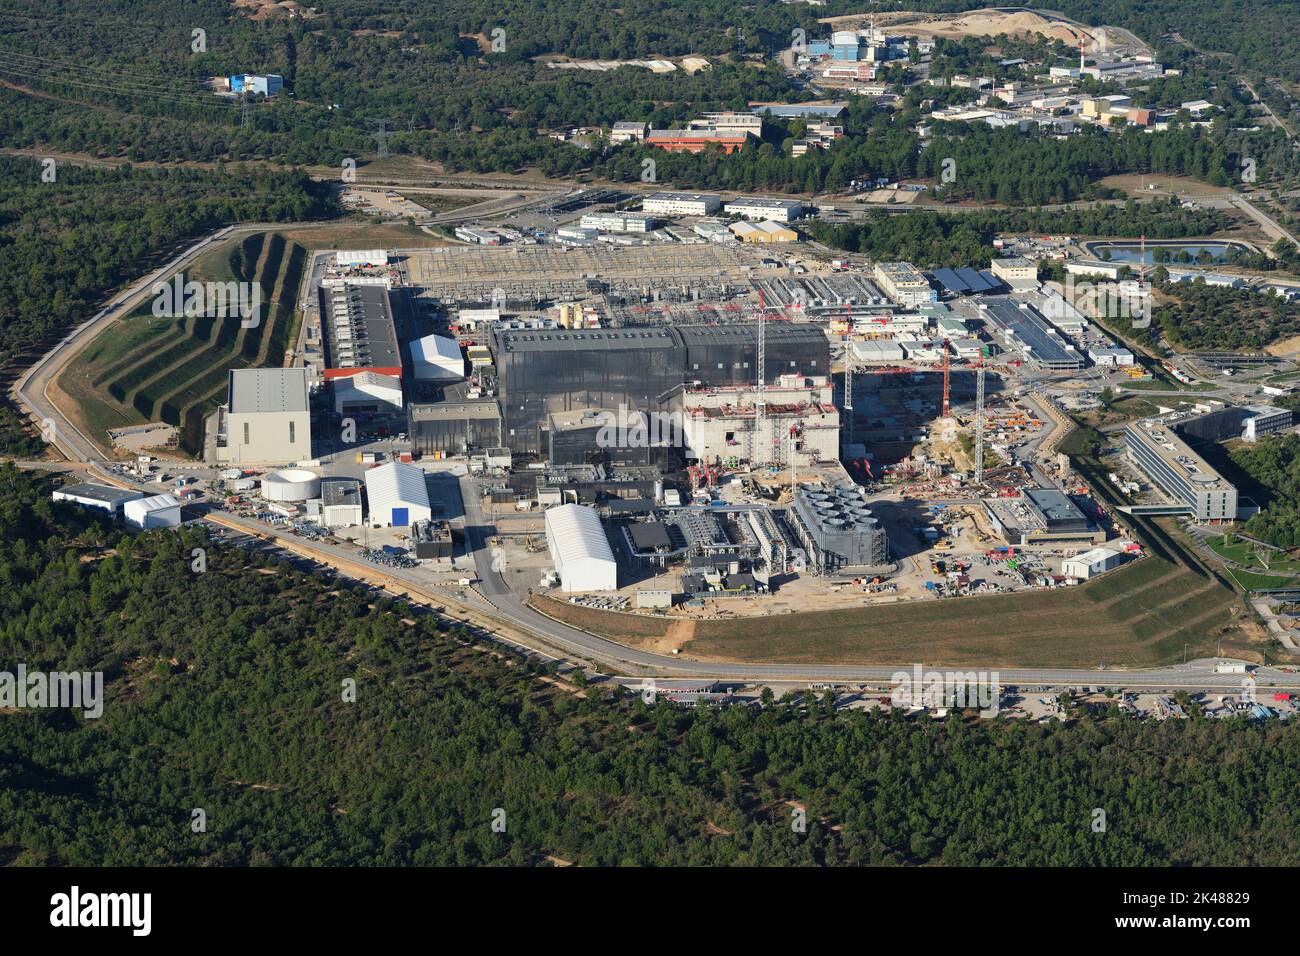 LUFTAUFNAHME. Baustelle von ITER: Ein internationales Megaprojekt zur Erprobung der Stromerzeugung durch Kernfusion. Frankreich. Stockfoto